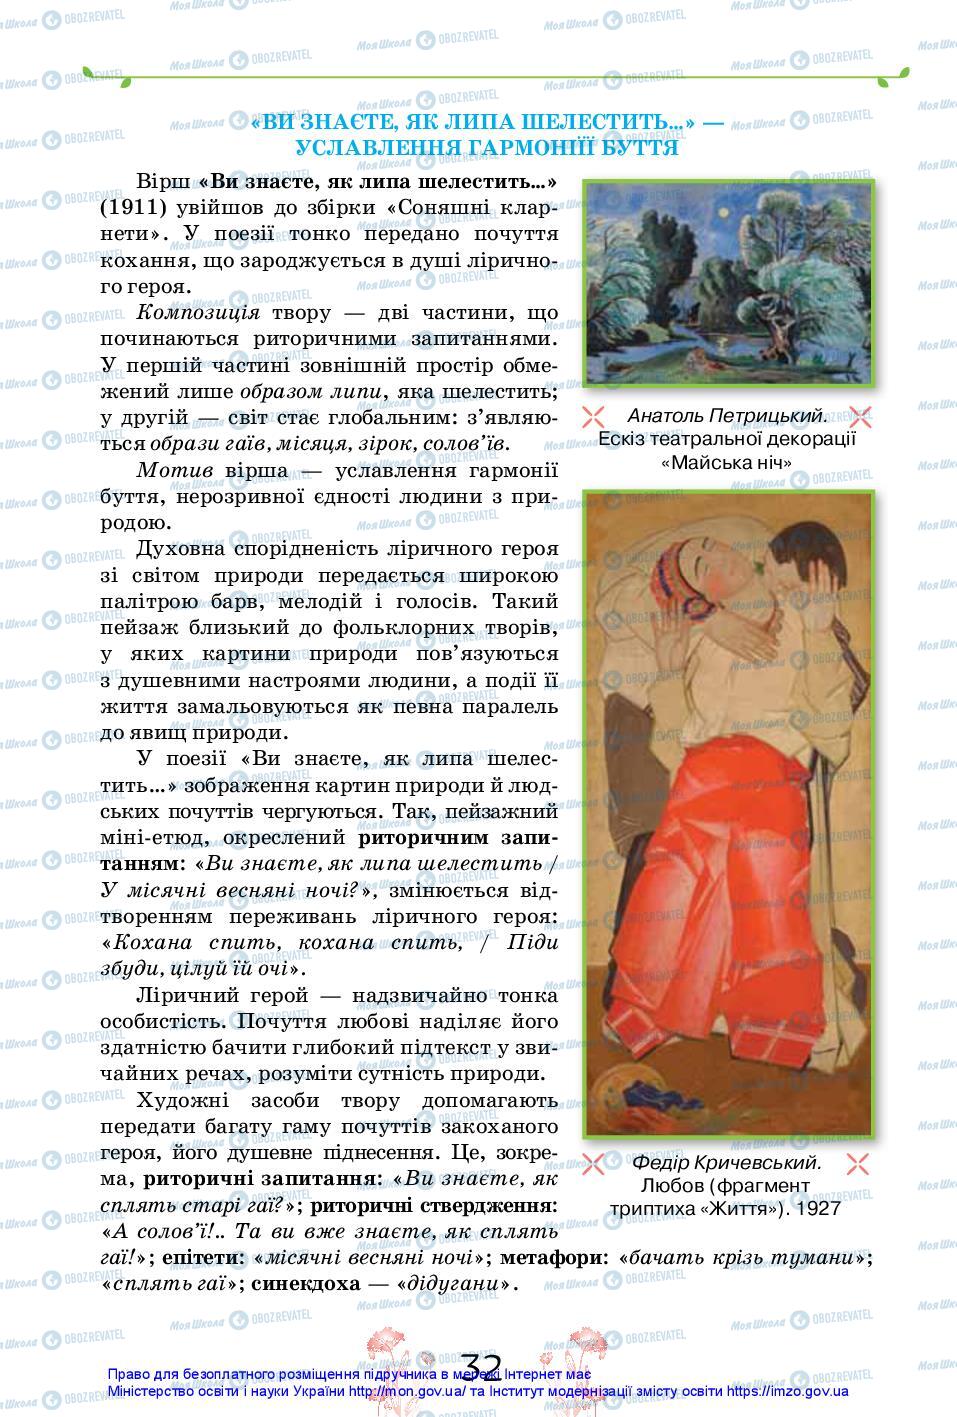 Підручники Українська література 11 клас сторінка 32